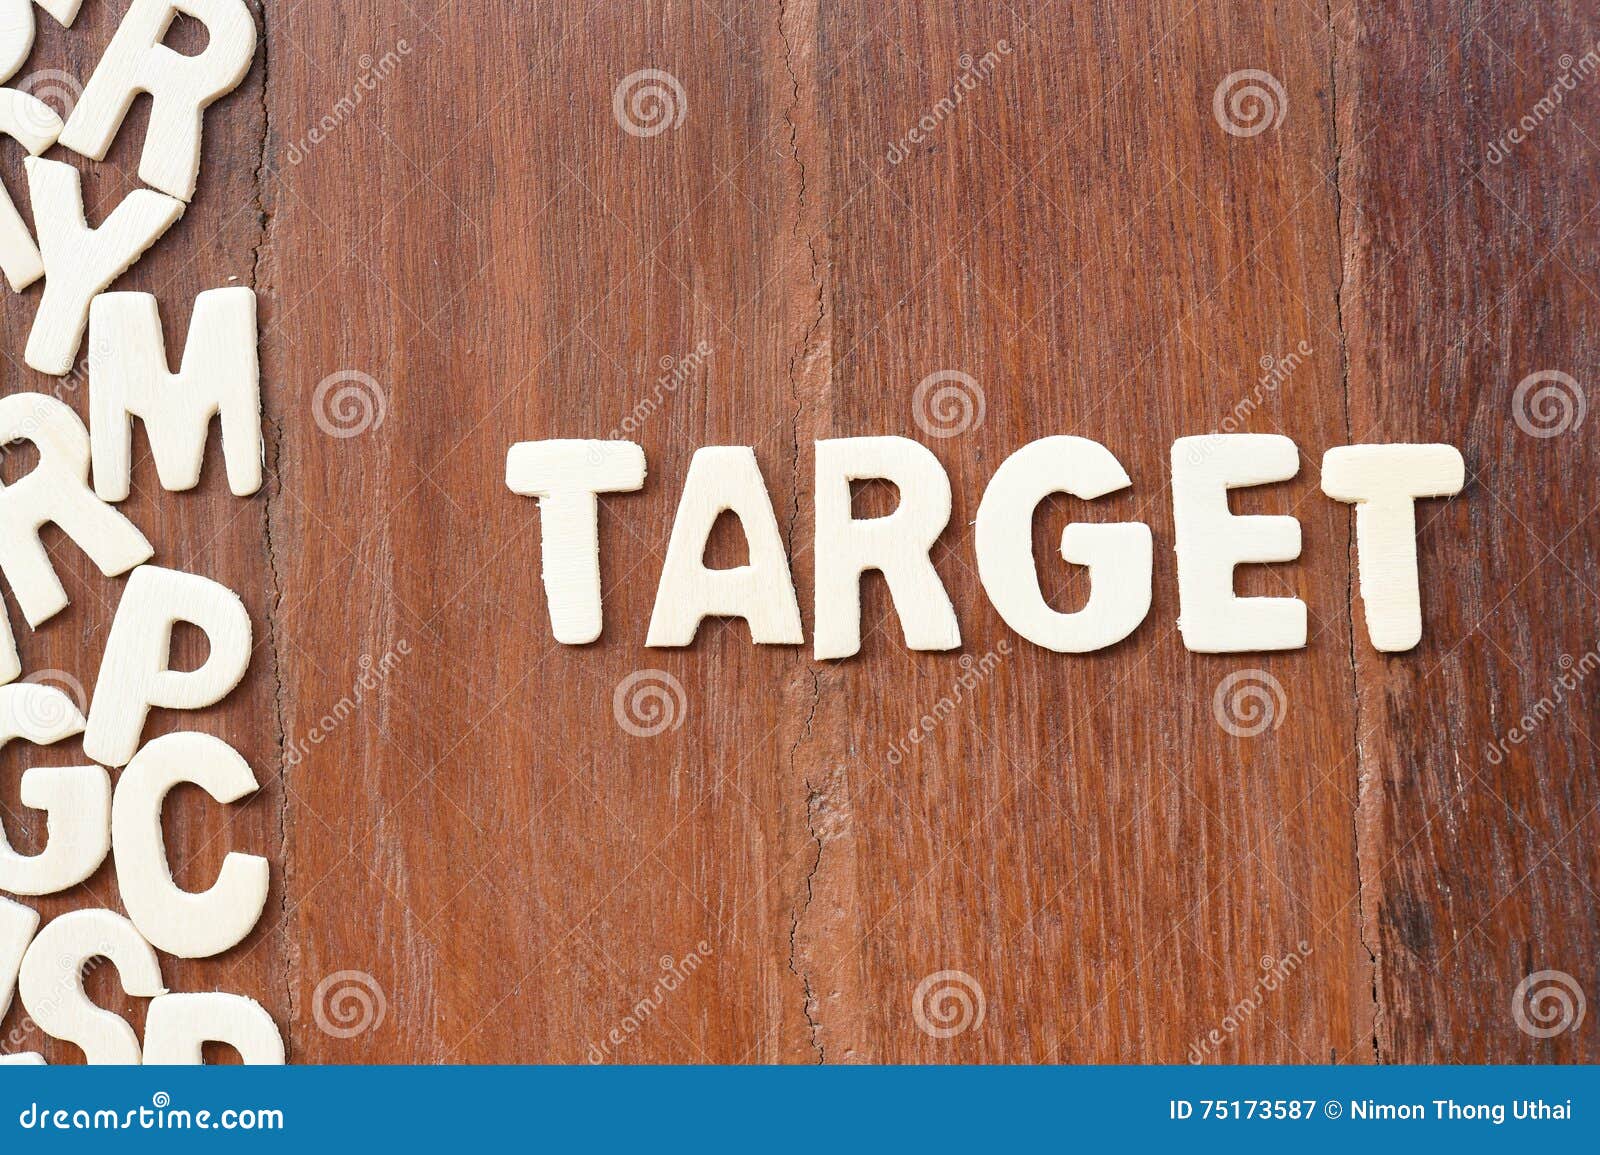 Как пишется деревяный. Слово target. Rules картинка деревянные буквы. Target Words. Надпись Толик буквы в ряд.